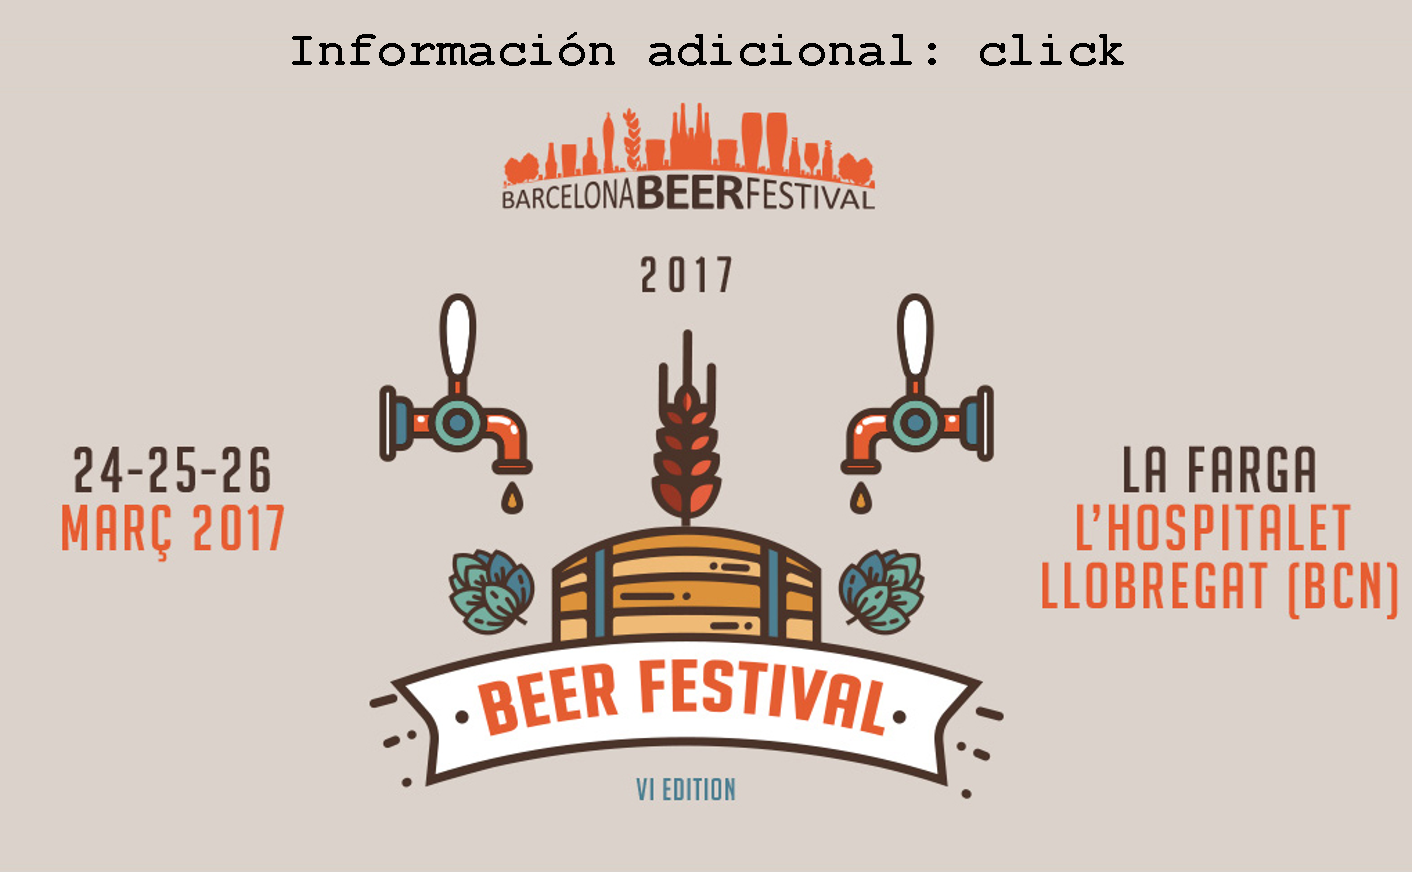 Barcelona Beer festival 2017